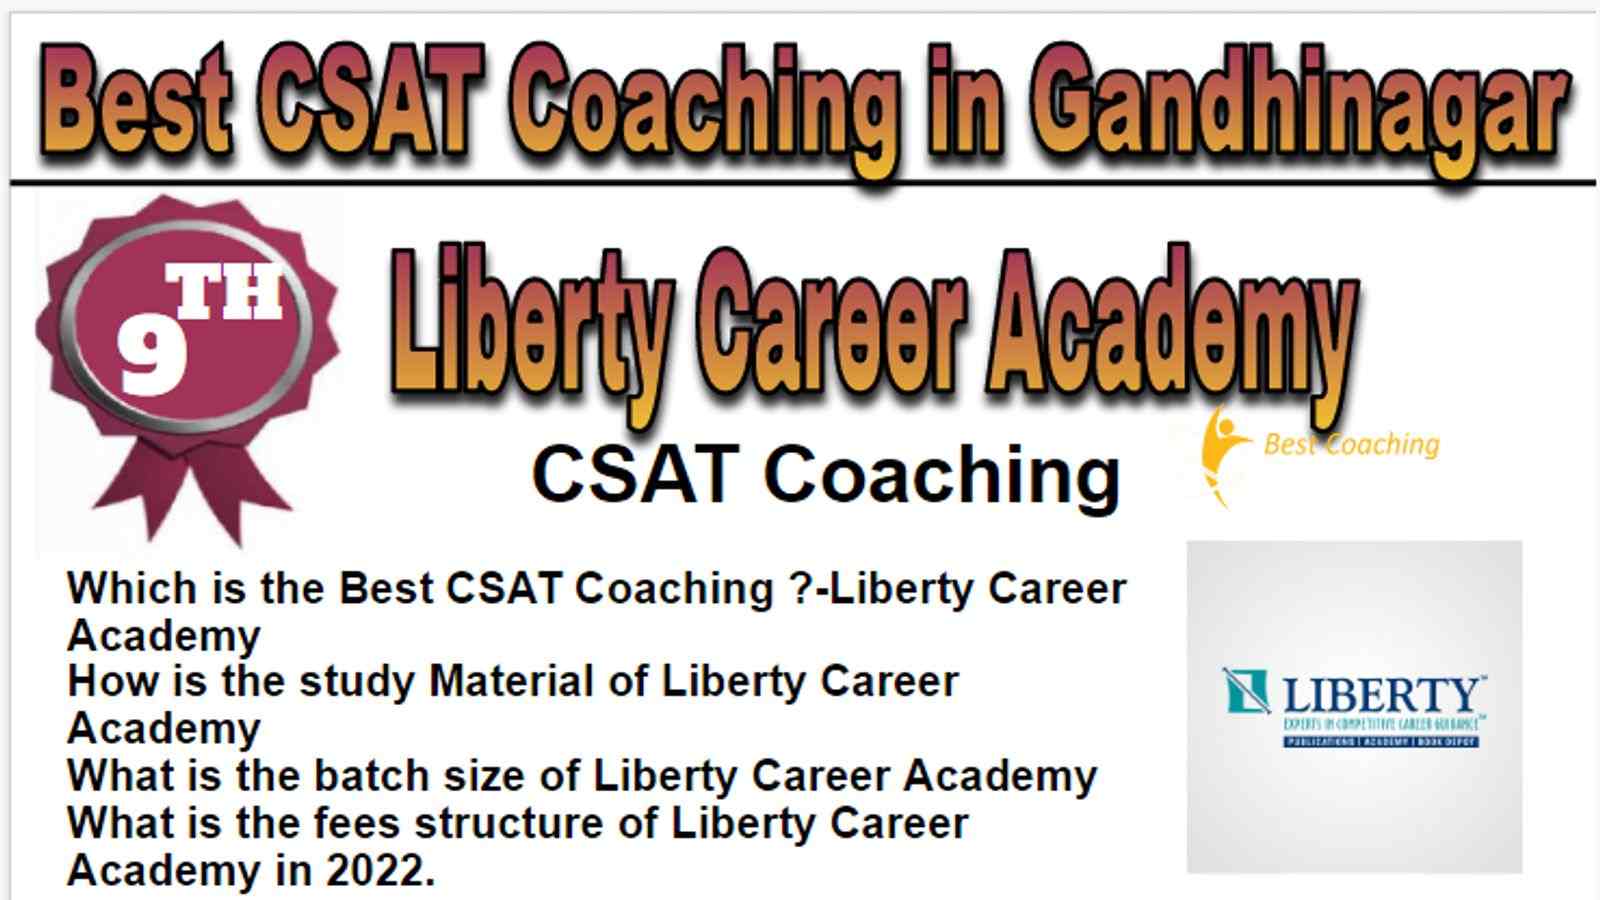 Rank 9 Best CSAT Coaching in Gandhinagar